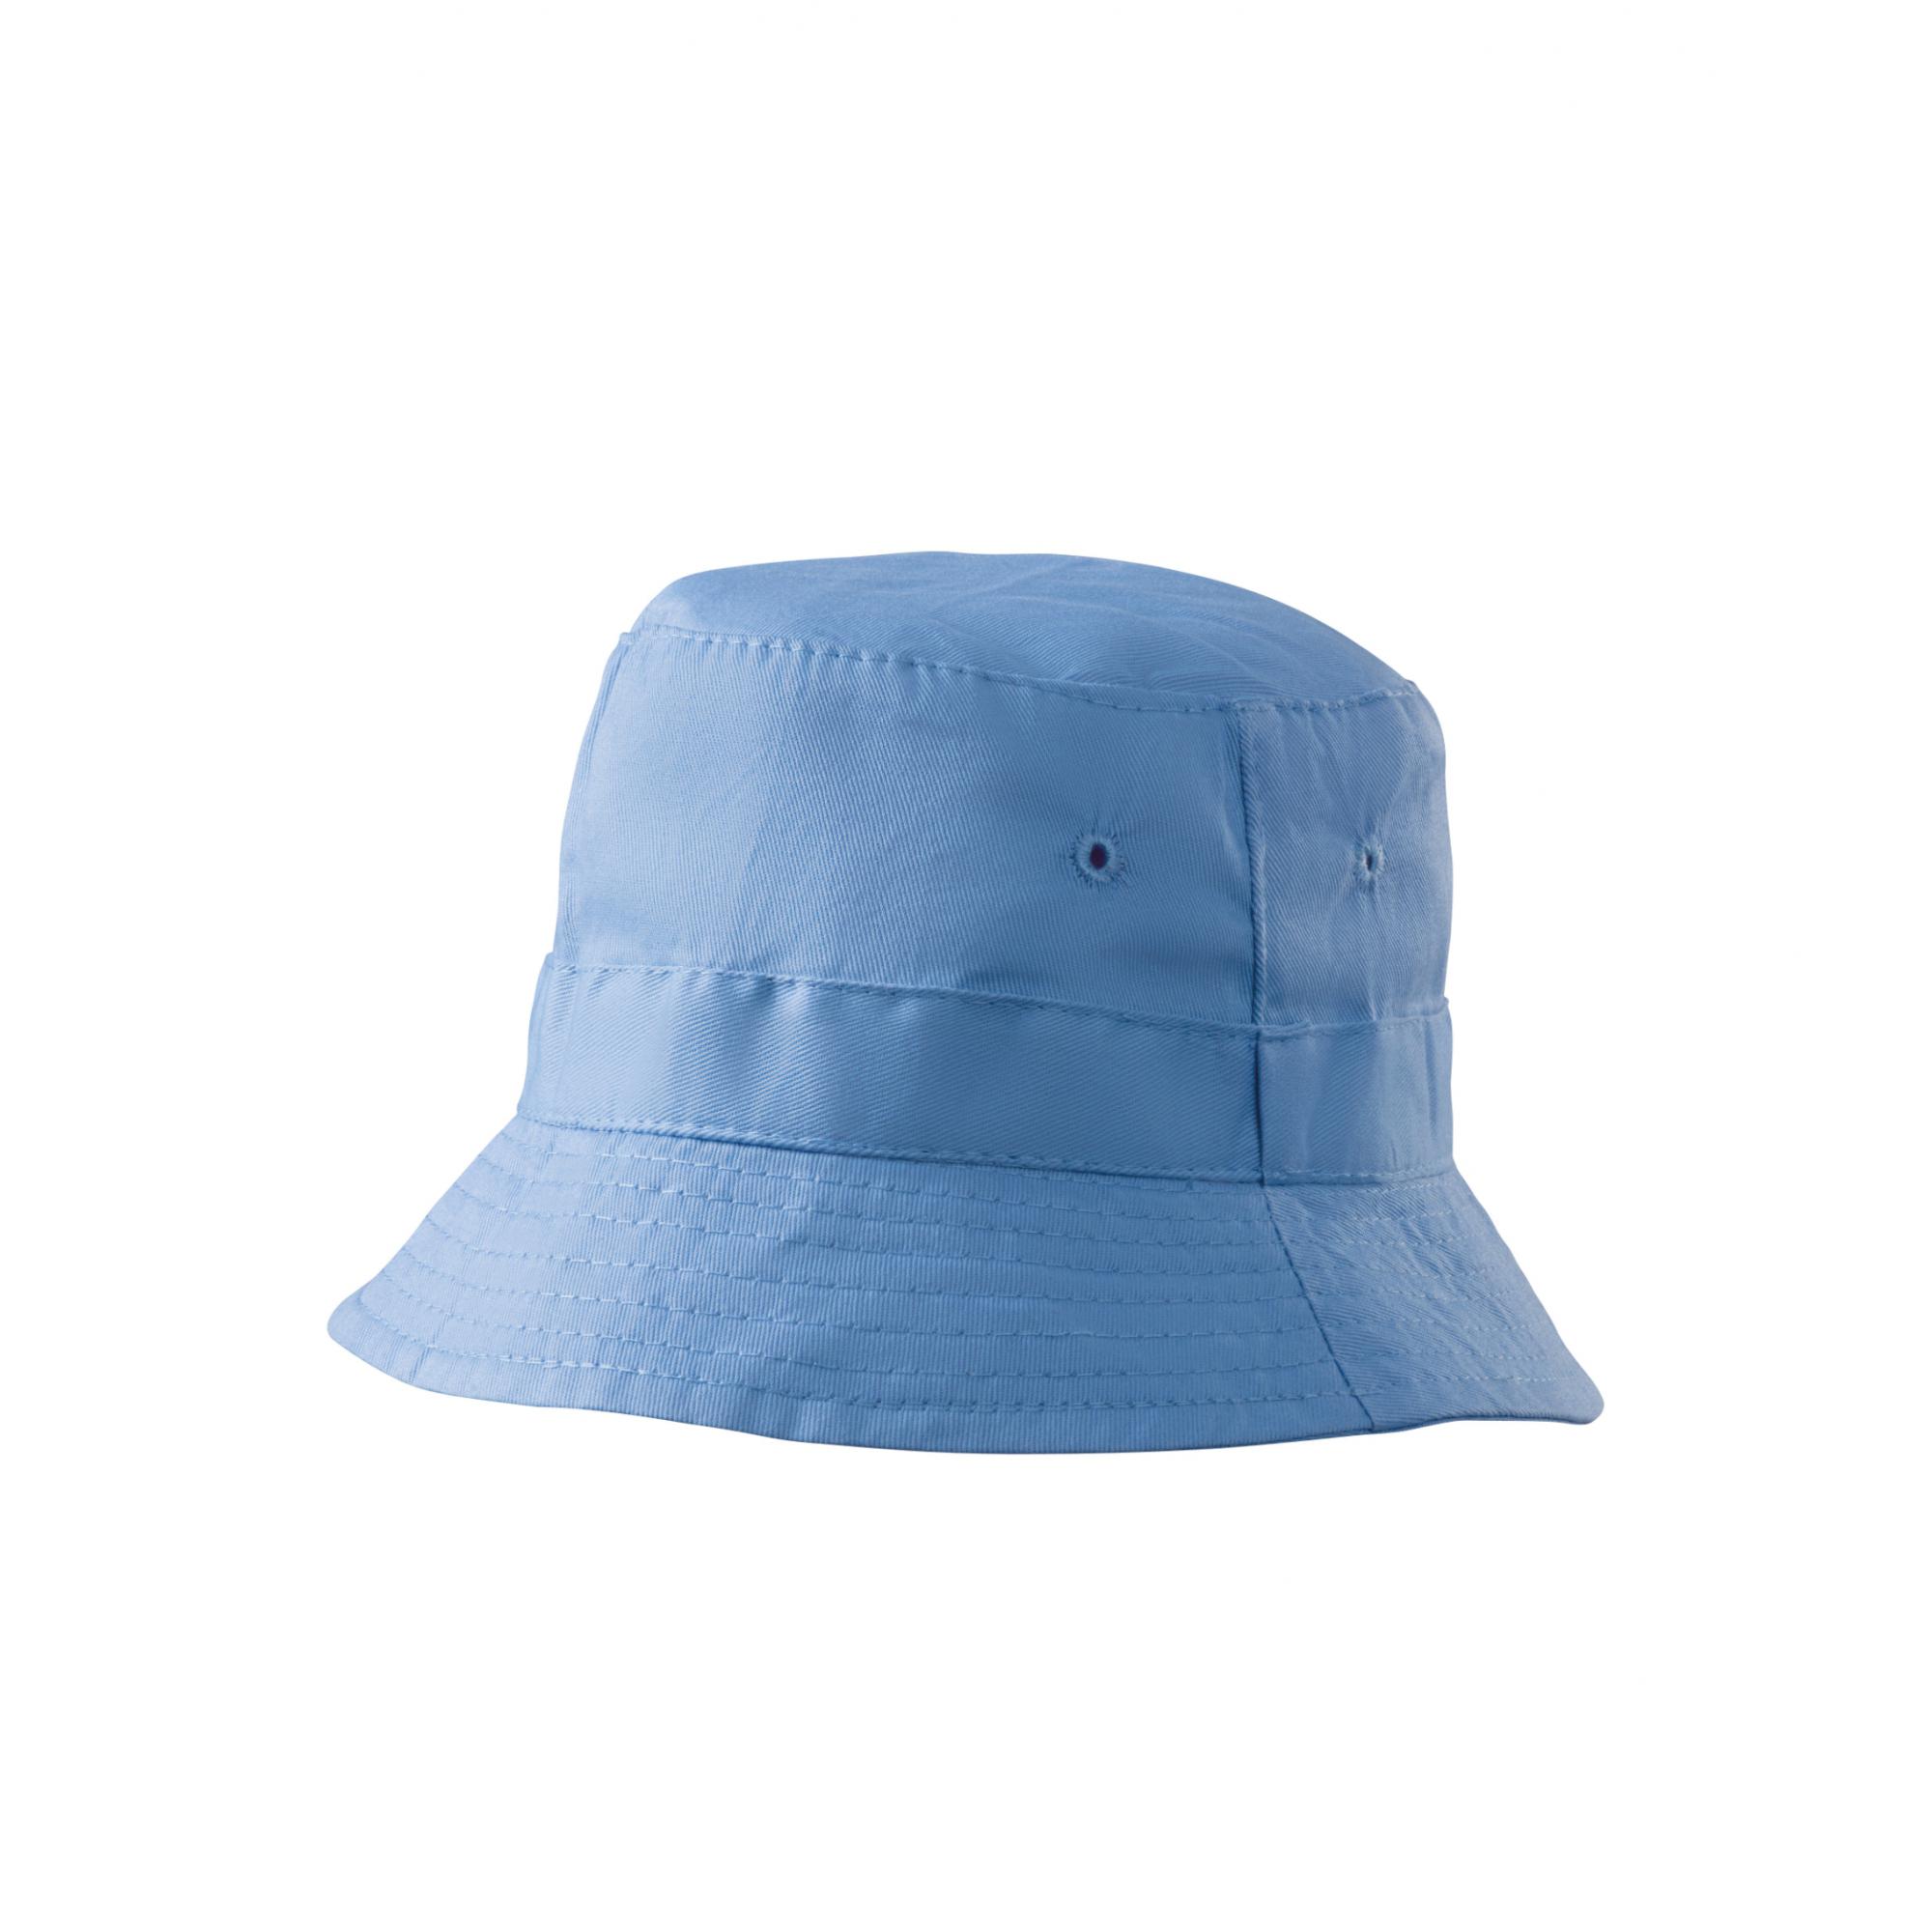 Pălărie unisex Classic 304 Albastru deschis Marime universala